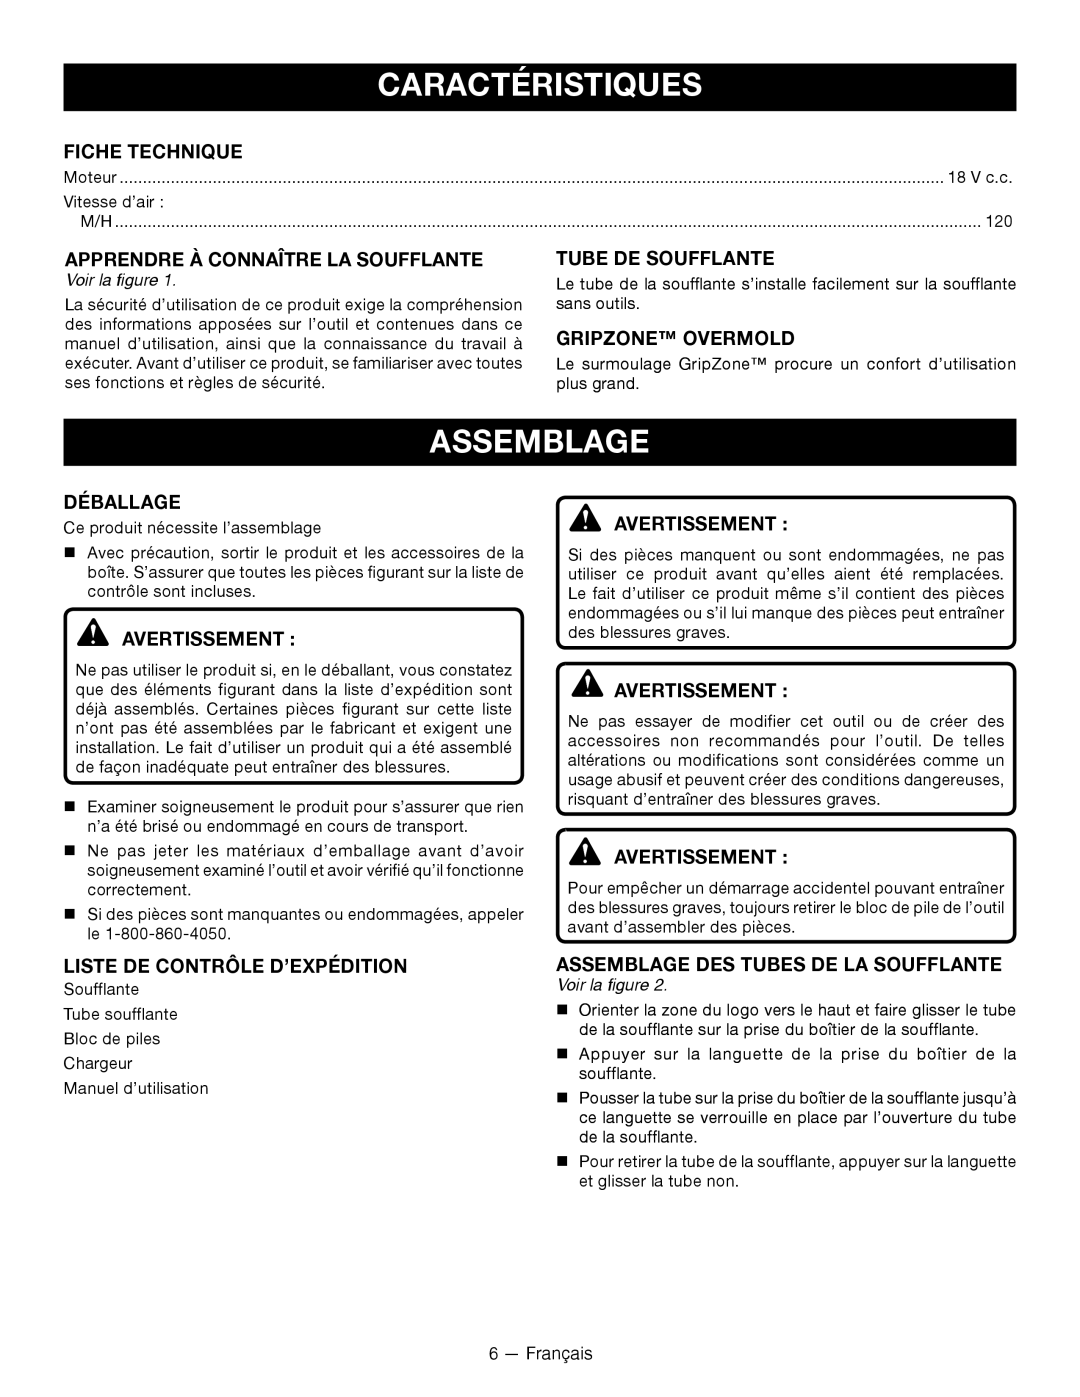 Ryobi P2102 manuel dutilisation Caractéristiques, Assemblage 